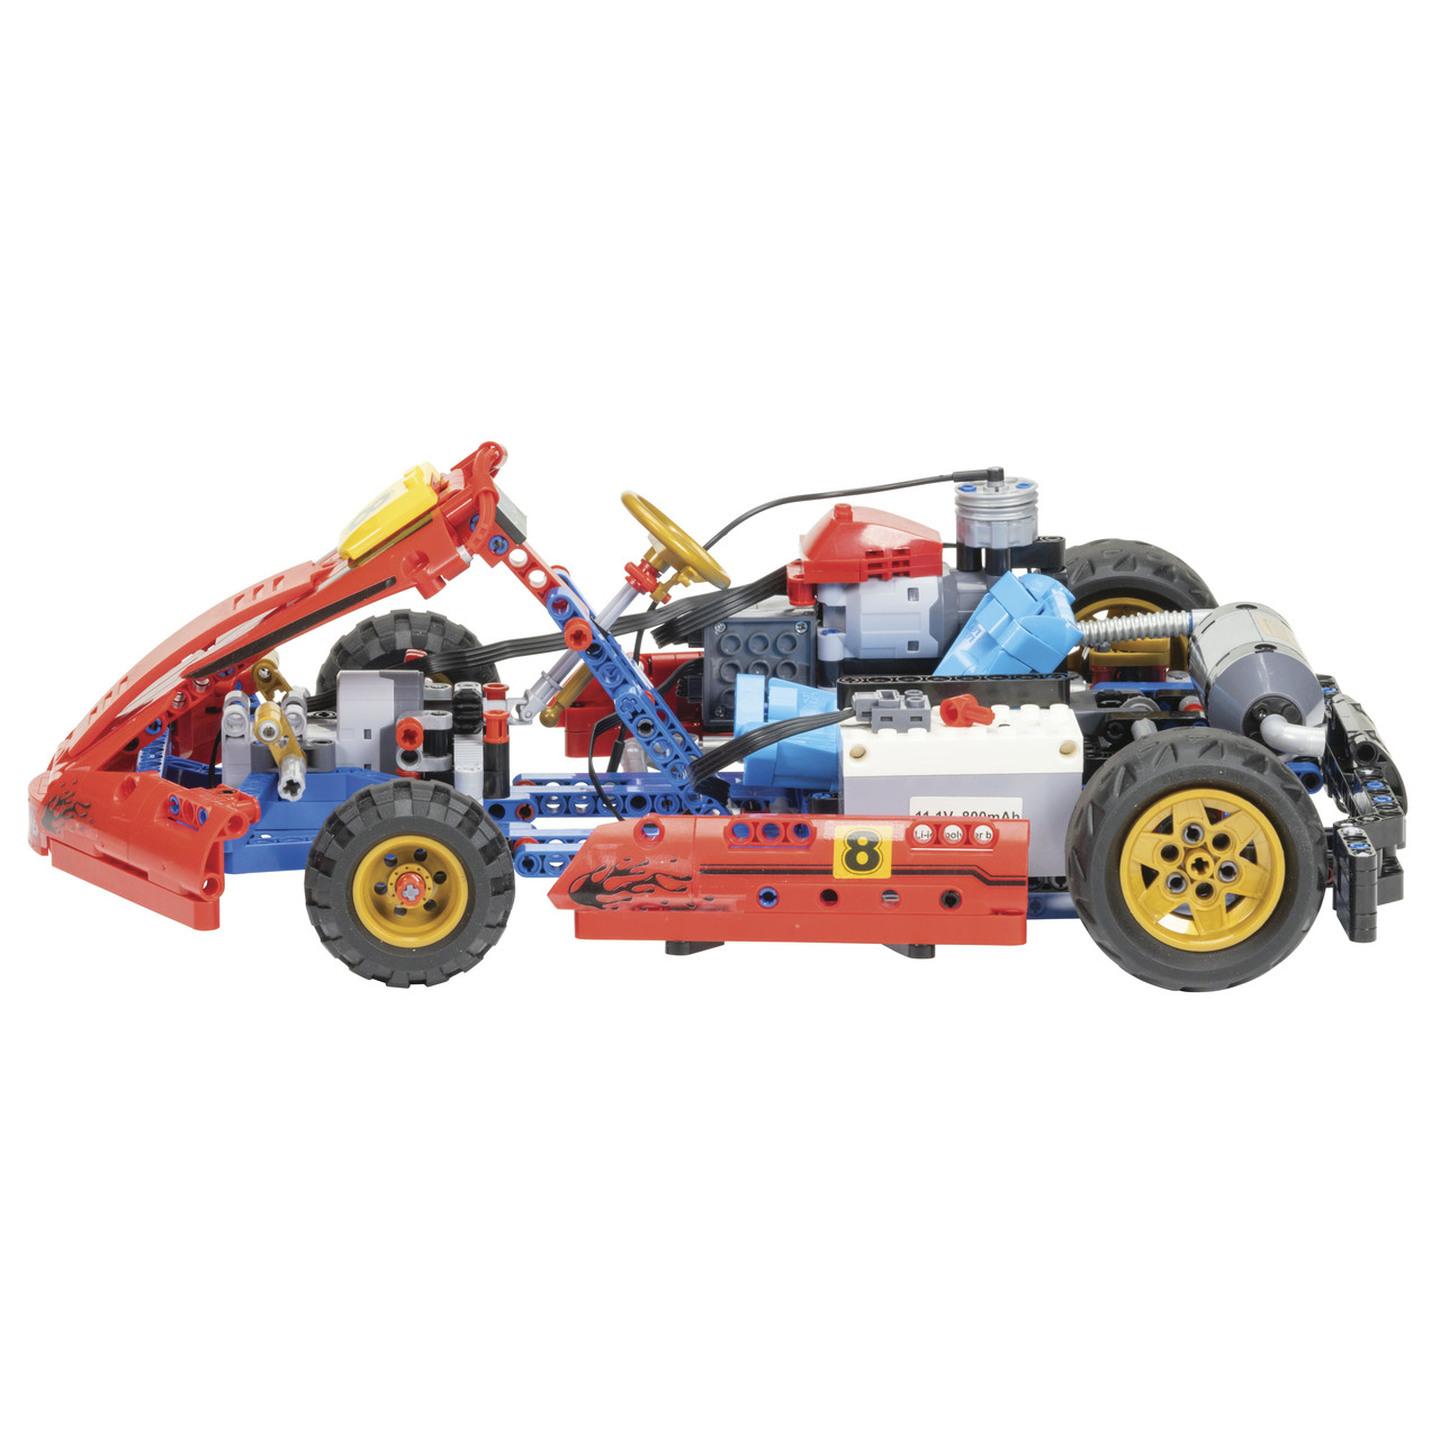 R/C Go Kart Construction Kit